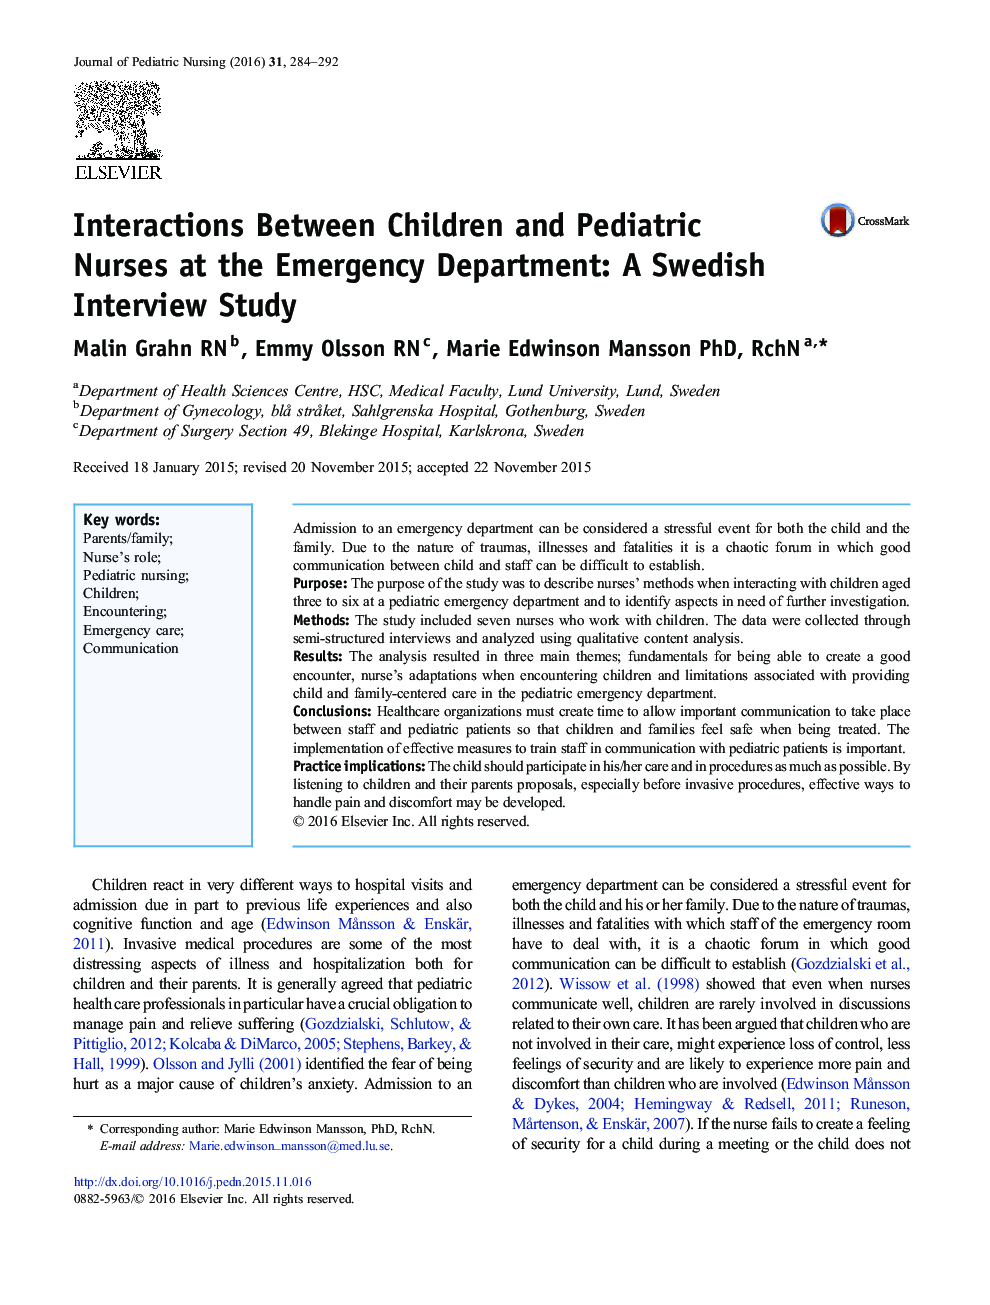 تعاملات میان پرستاران کودکان و کودکان در بخش اورژانس: یک مطالعه مصاحبه سوئدی 